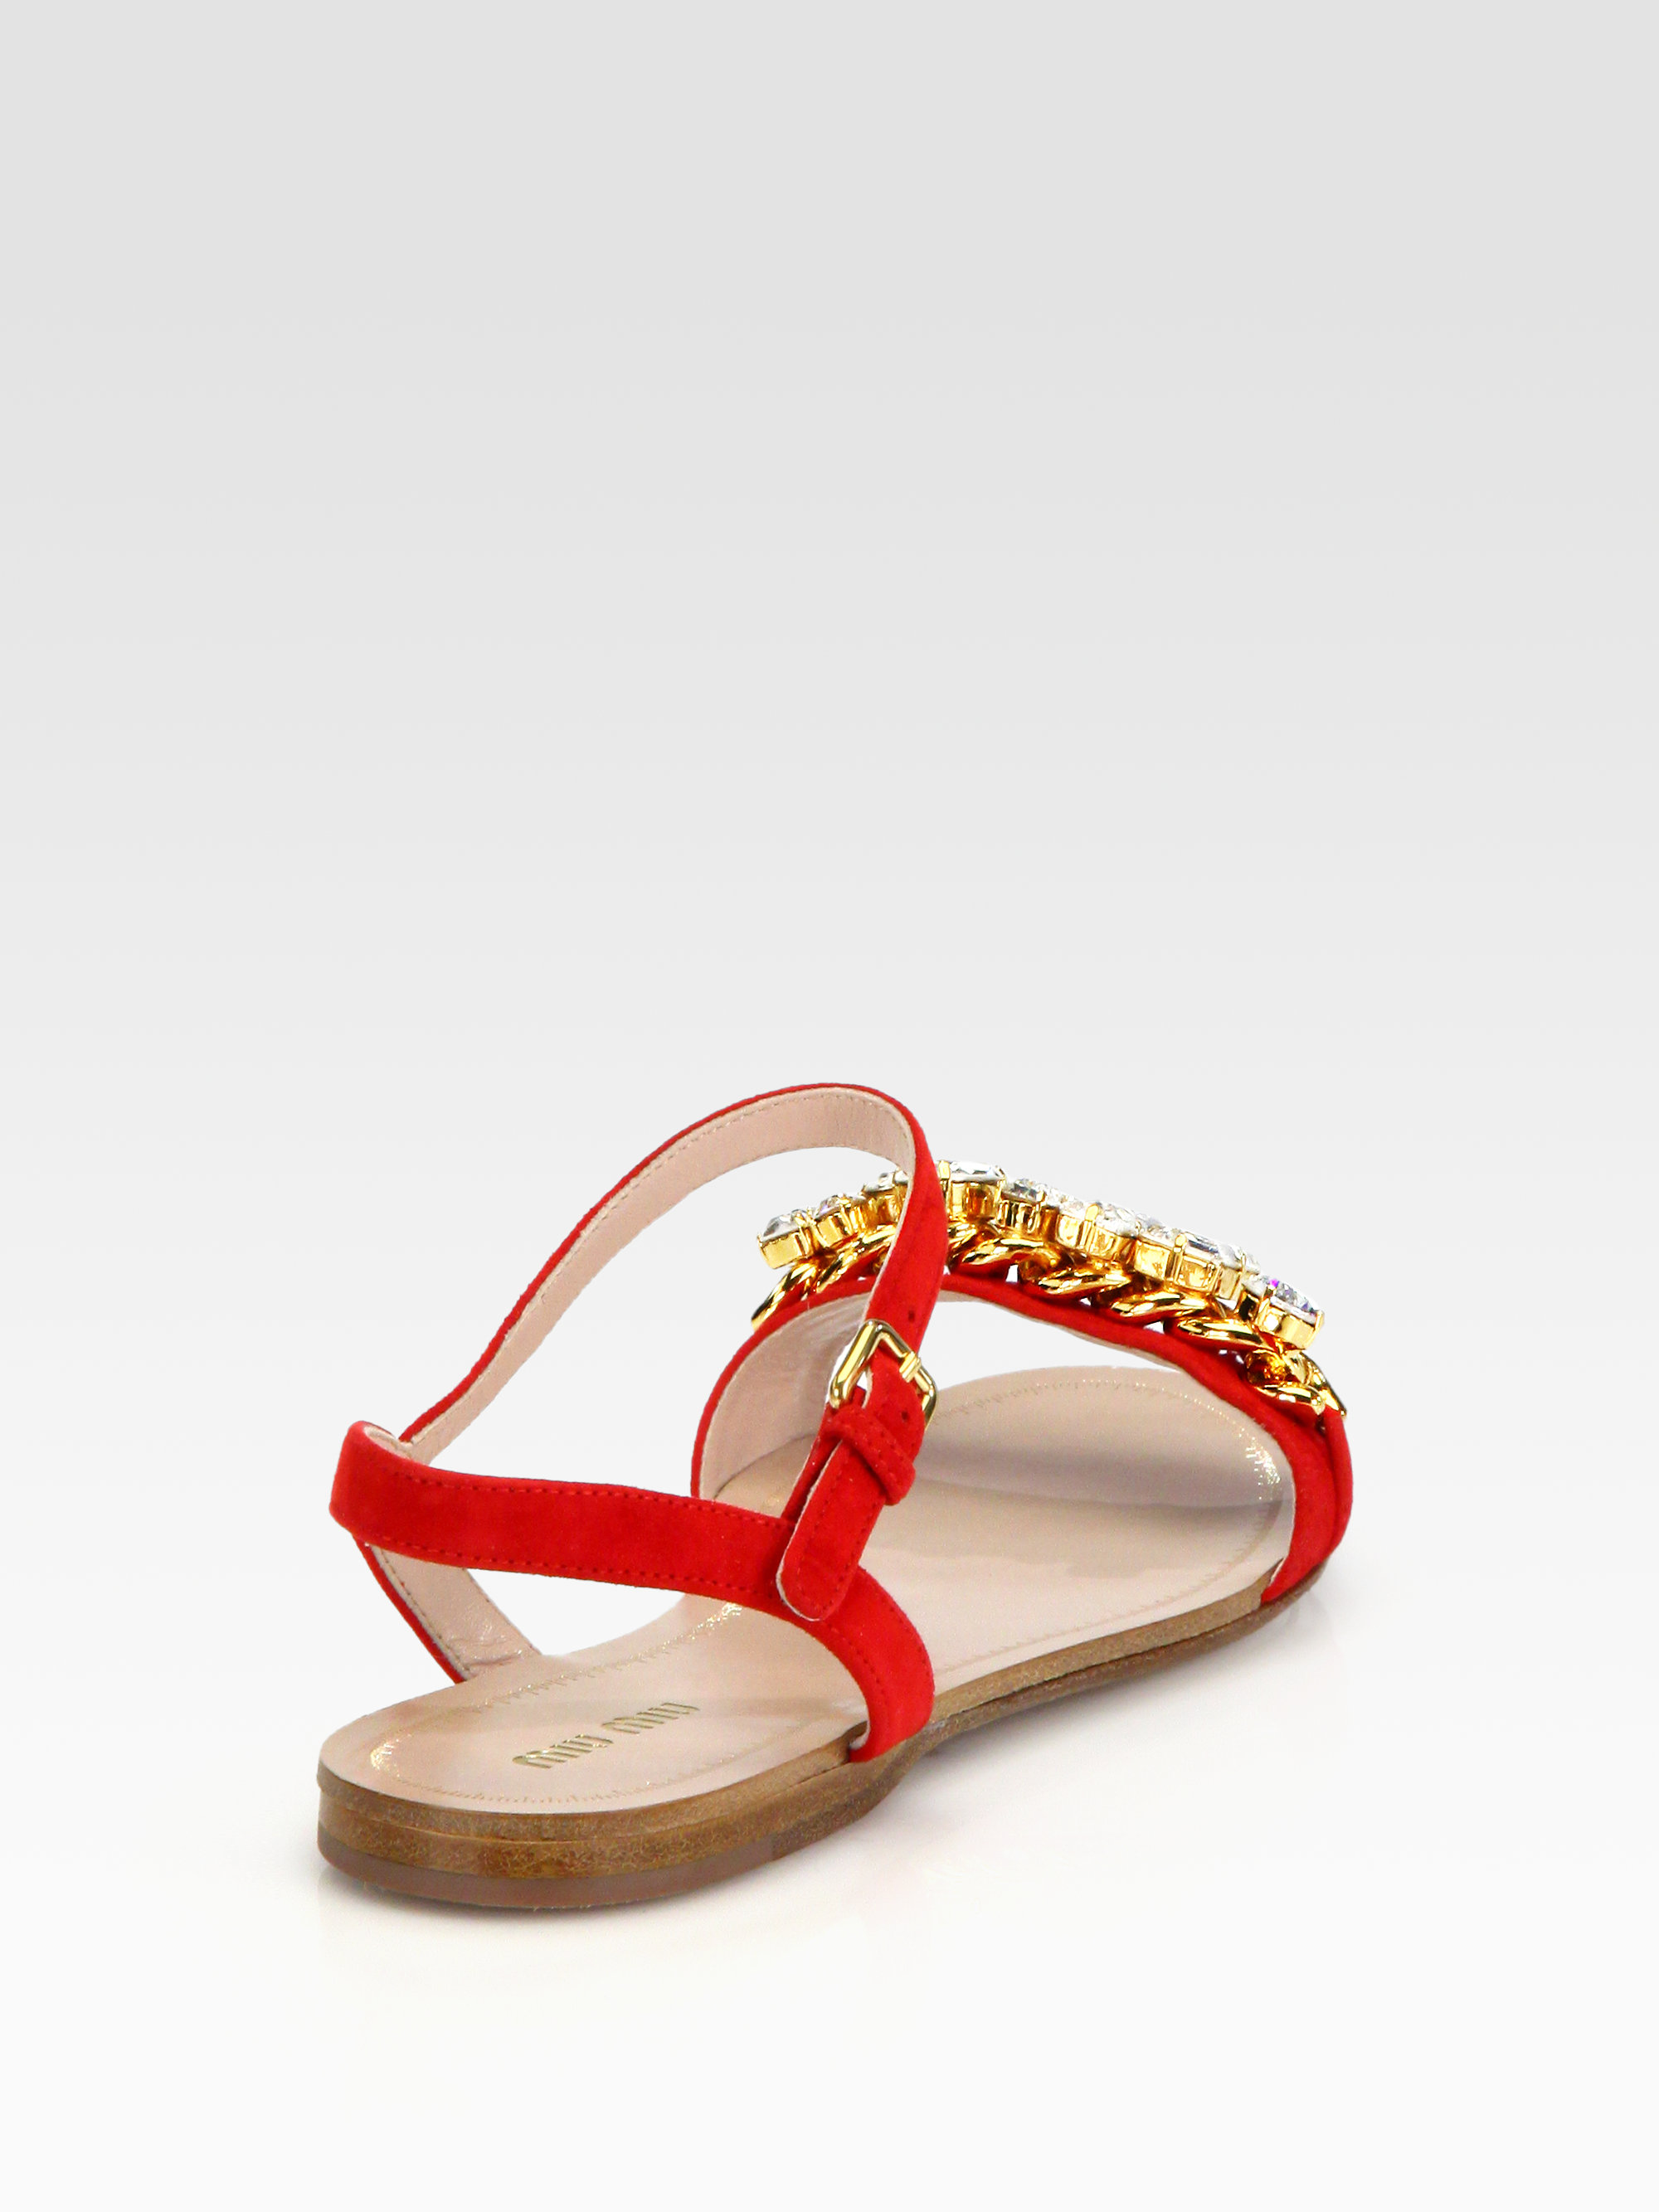 Miu Miu Jeweled Suede Sandals in Red - Lyst